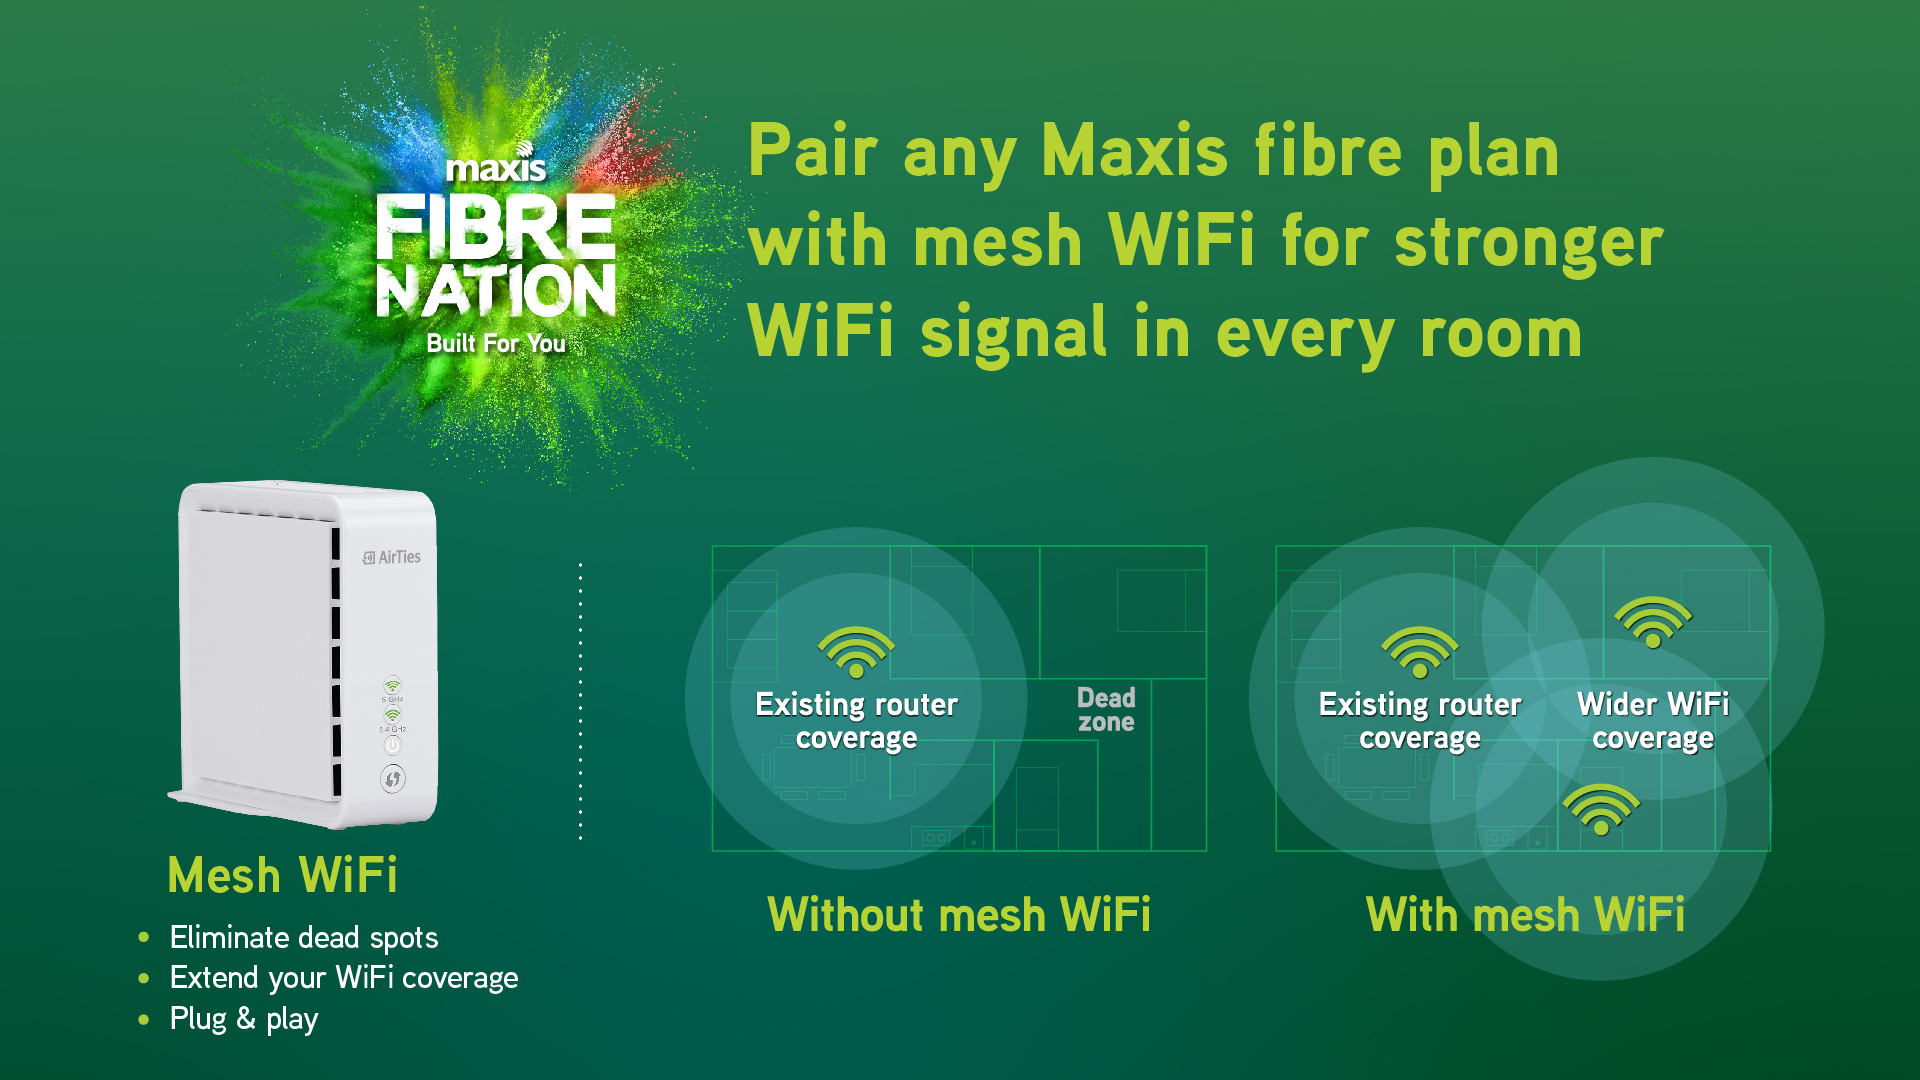 Maxis fibre plan